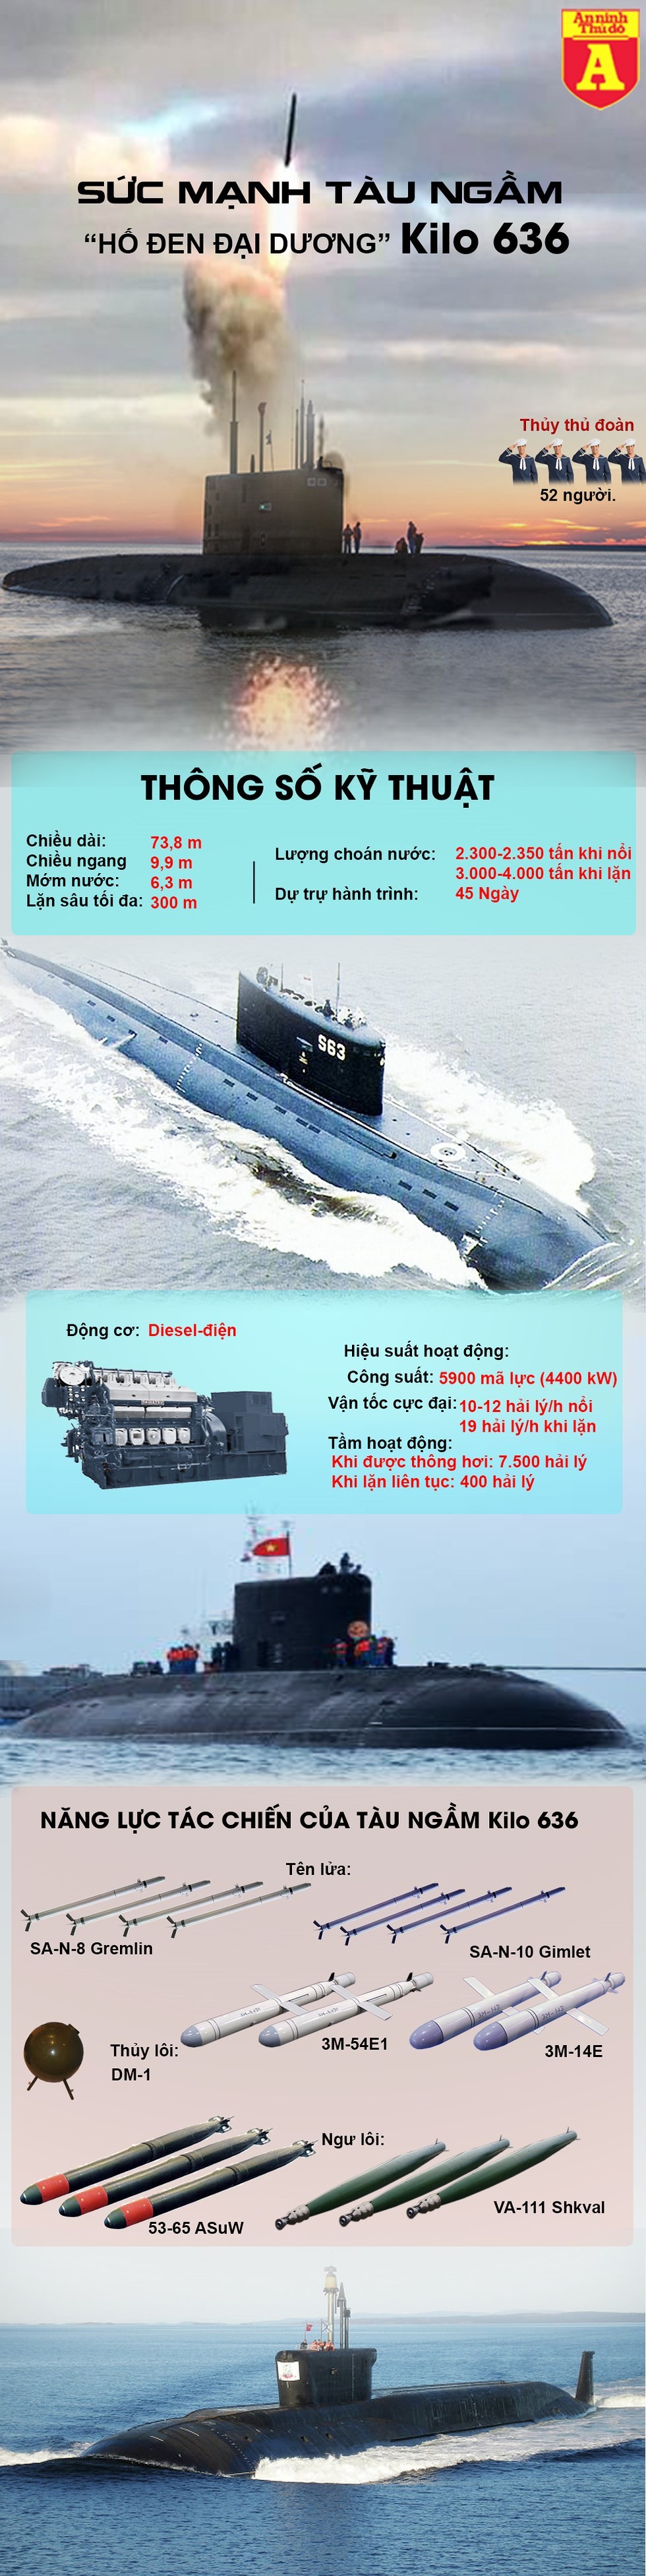 [Info] Tàu ngầm Kilo 636 mạnh cỡ nào khiến các nước phát thèm ảnh 2